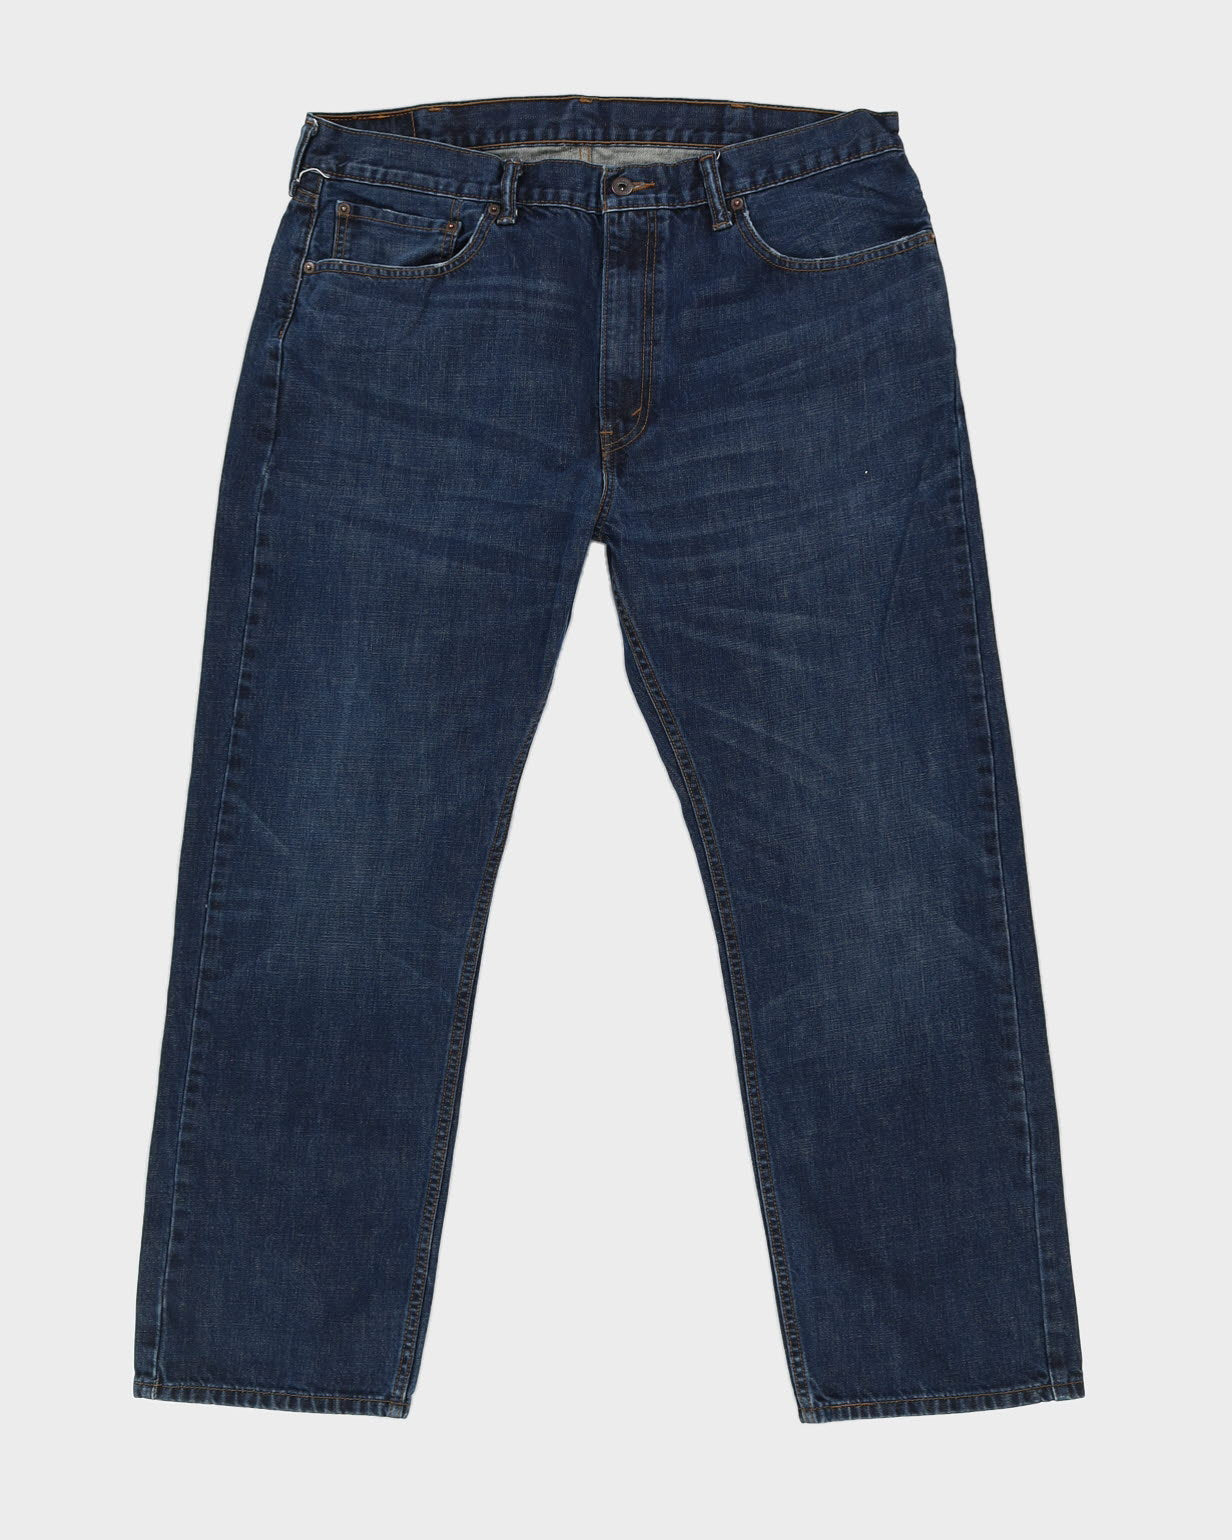 Levi's 505 Blue Jeans - W38 L29